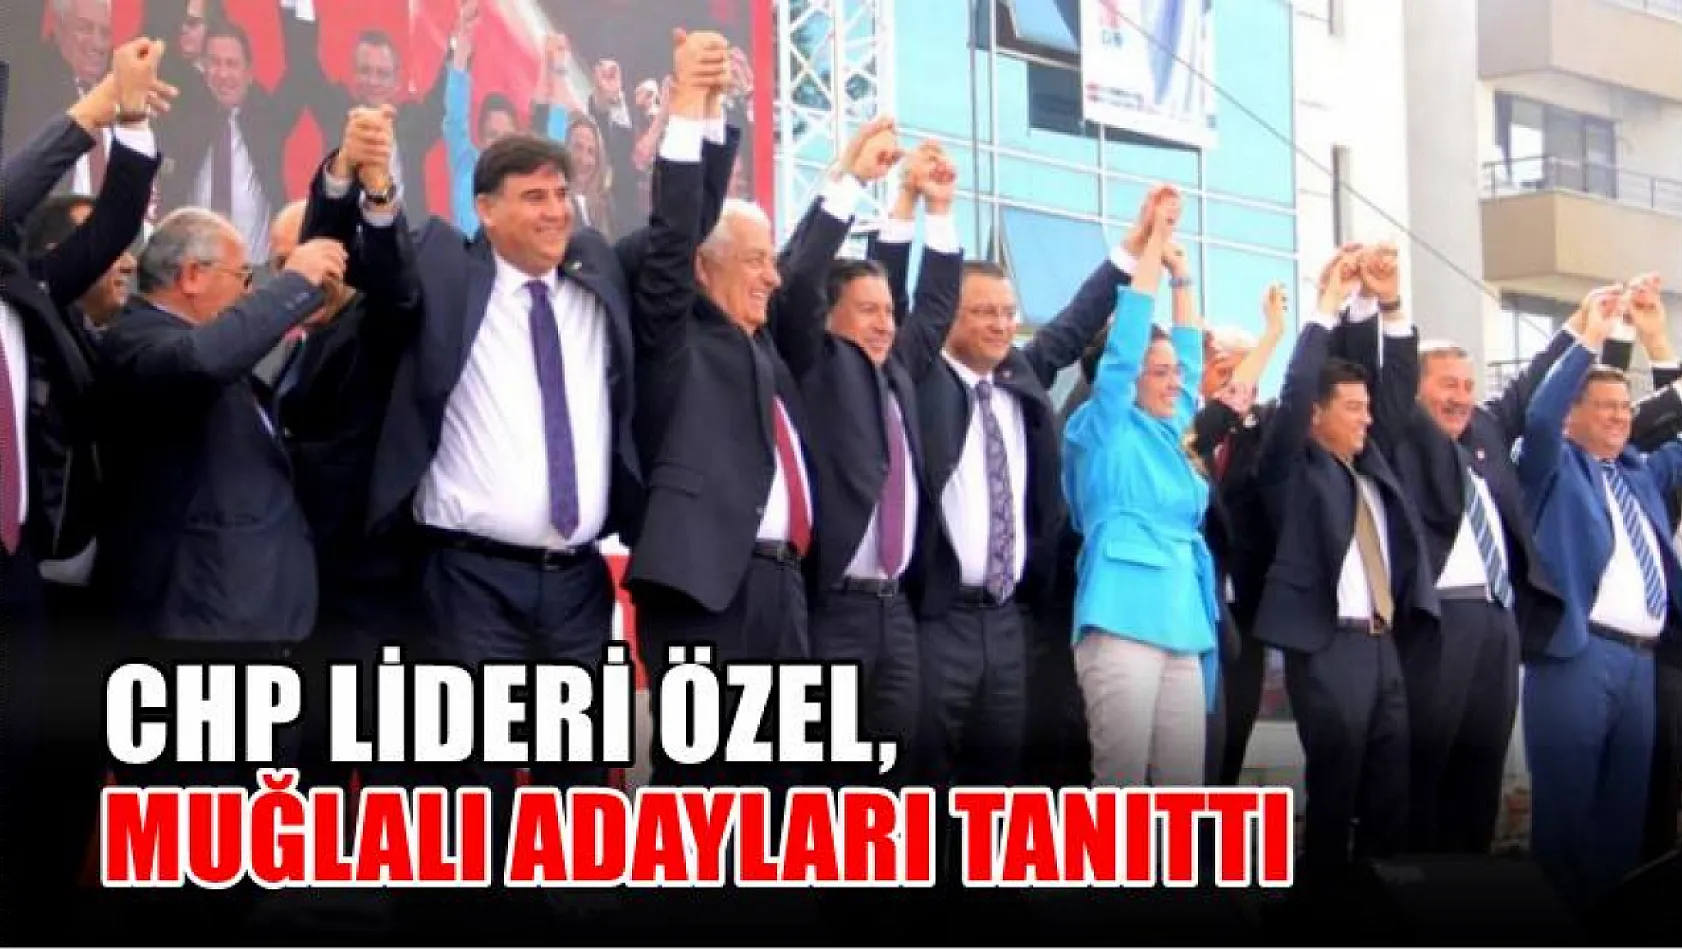 CHP Lideri Özel, Muğlalı Adayları Tanıttı